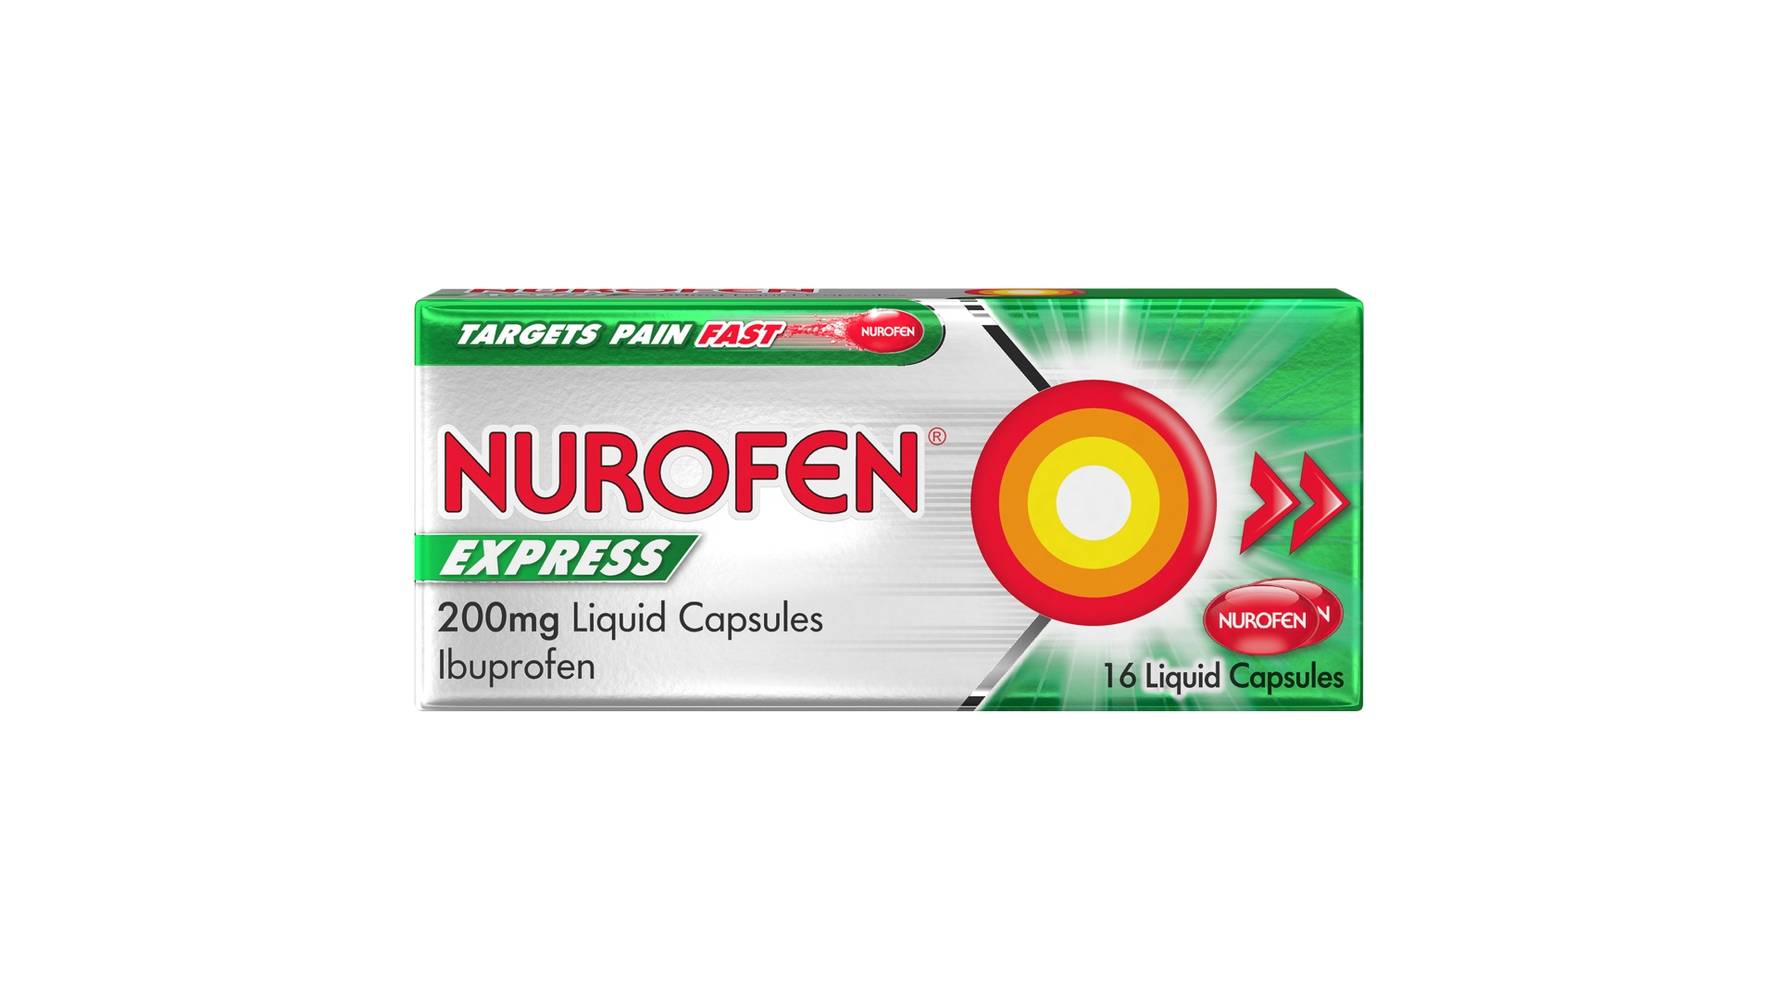 Nurofen Express Pain Relief 200mg Liquid Capsules (16ct)